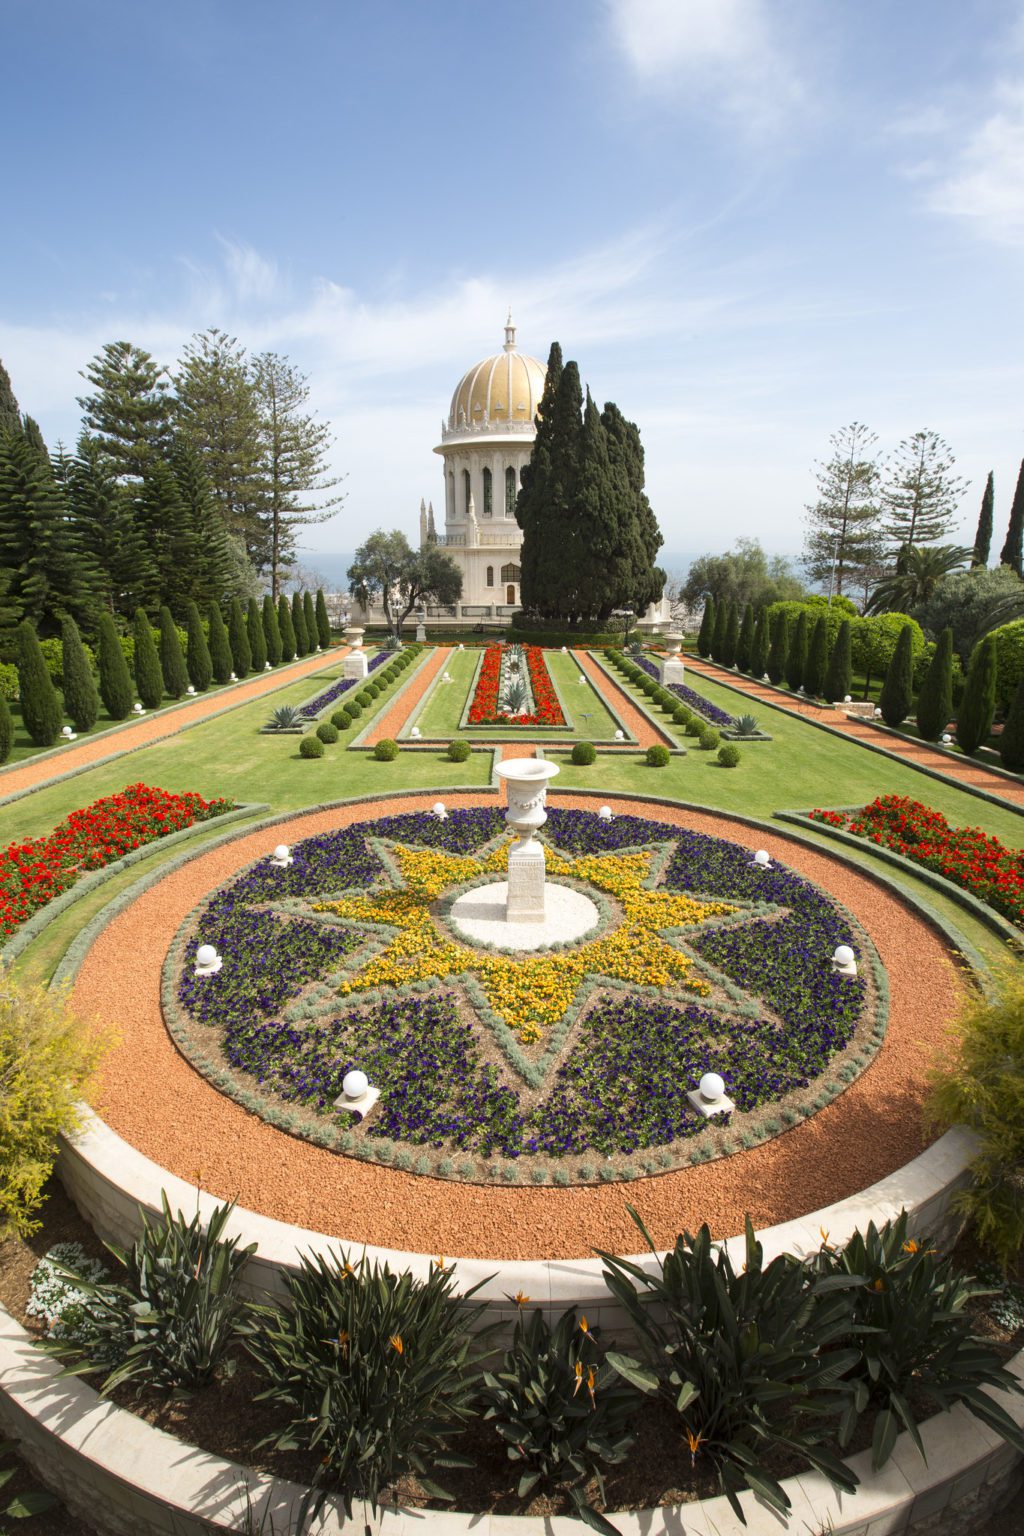 Baha'i gardens and shrine in Haifa